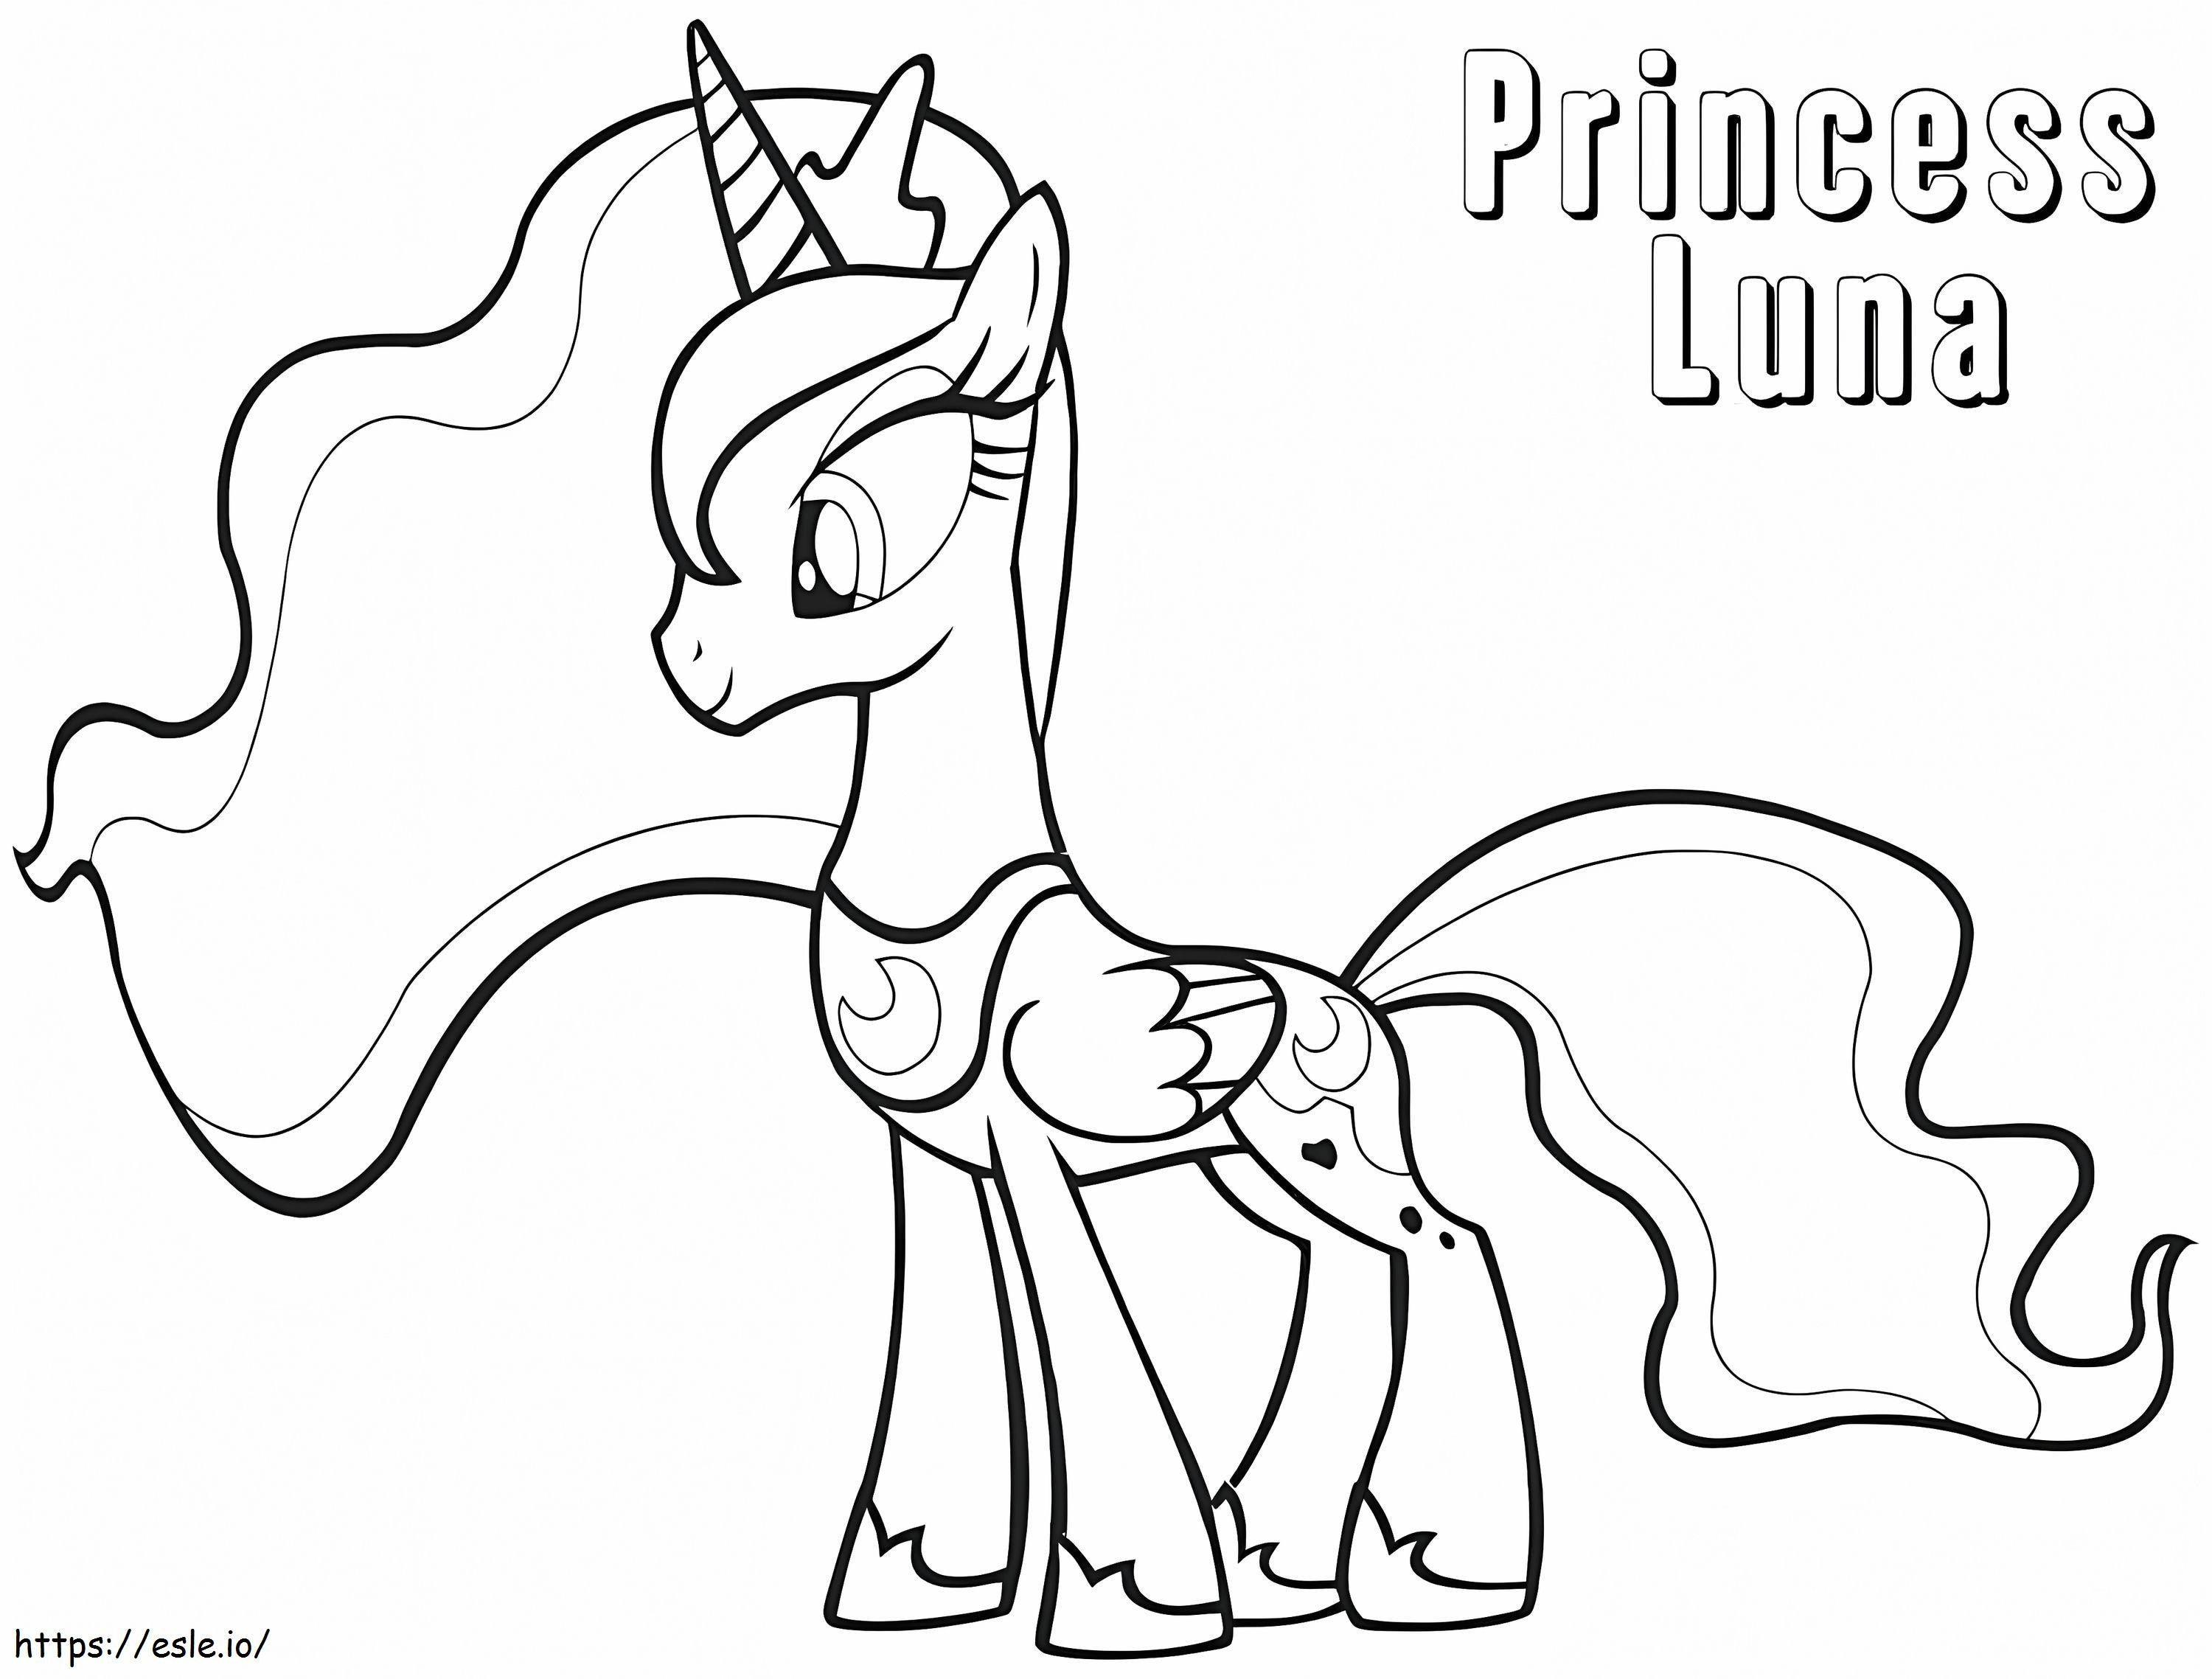 Güzel Prenses Luna boyama